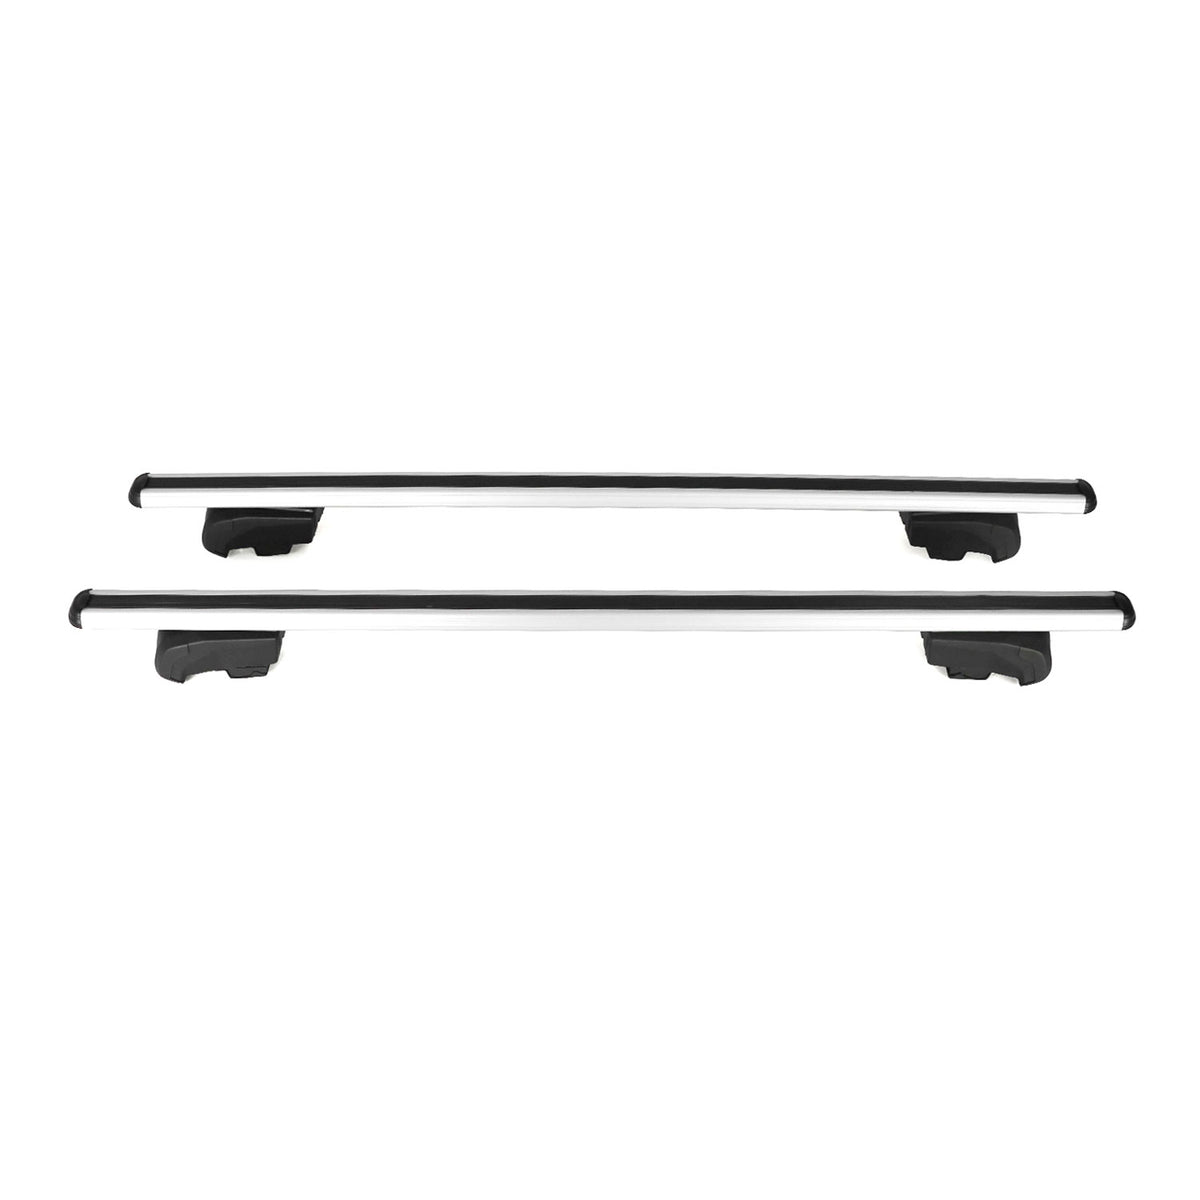 Roof rack luggage rack for VW Touareg 2018-2023 cross bars TÜV ABE aluminum gray 2x